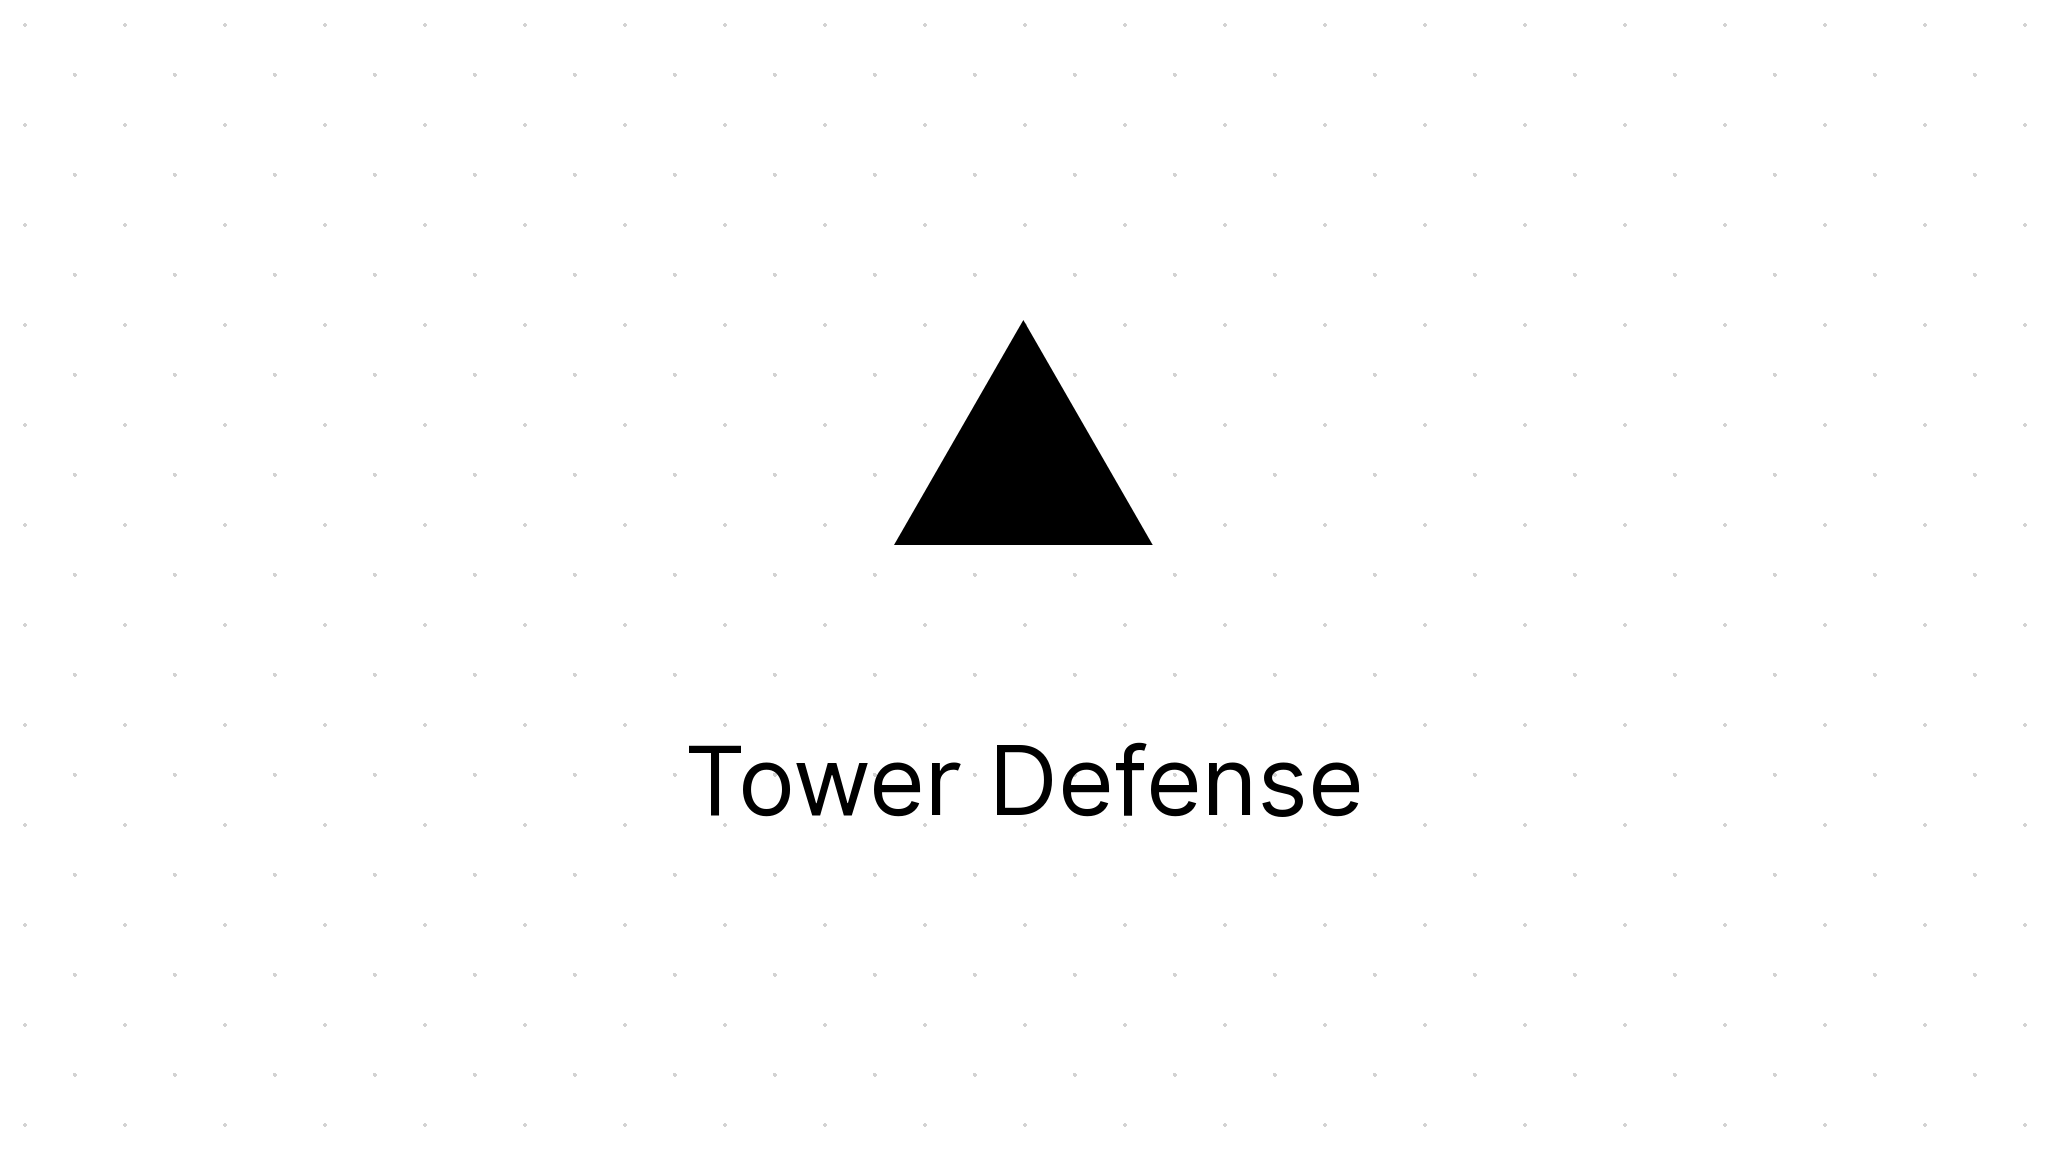 Fantasy Tower Defense Unblocked